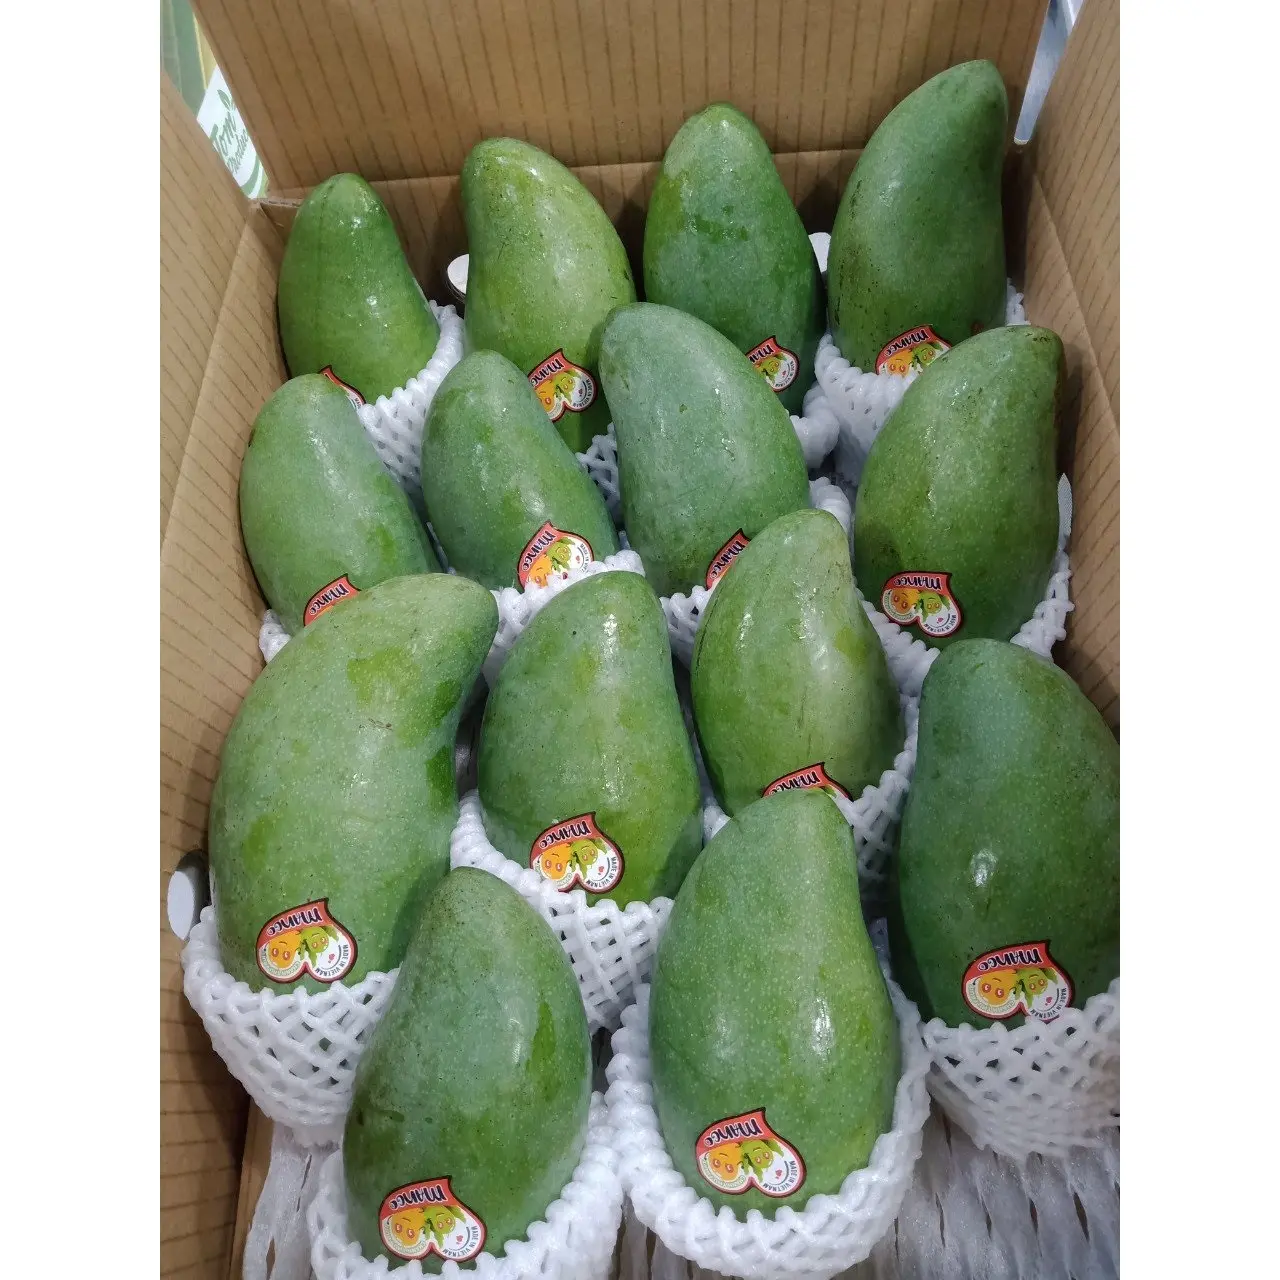 200-1100G/Fruit Hoge Kwaliteit Kartonnen Doos Verpakking Groene Kleur Gemeenschappelijke Teelt Type Zoete Smaak Mango Export uit Vietnam